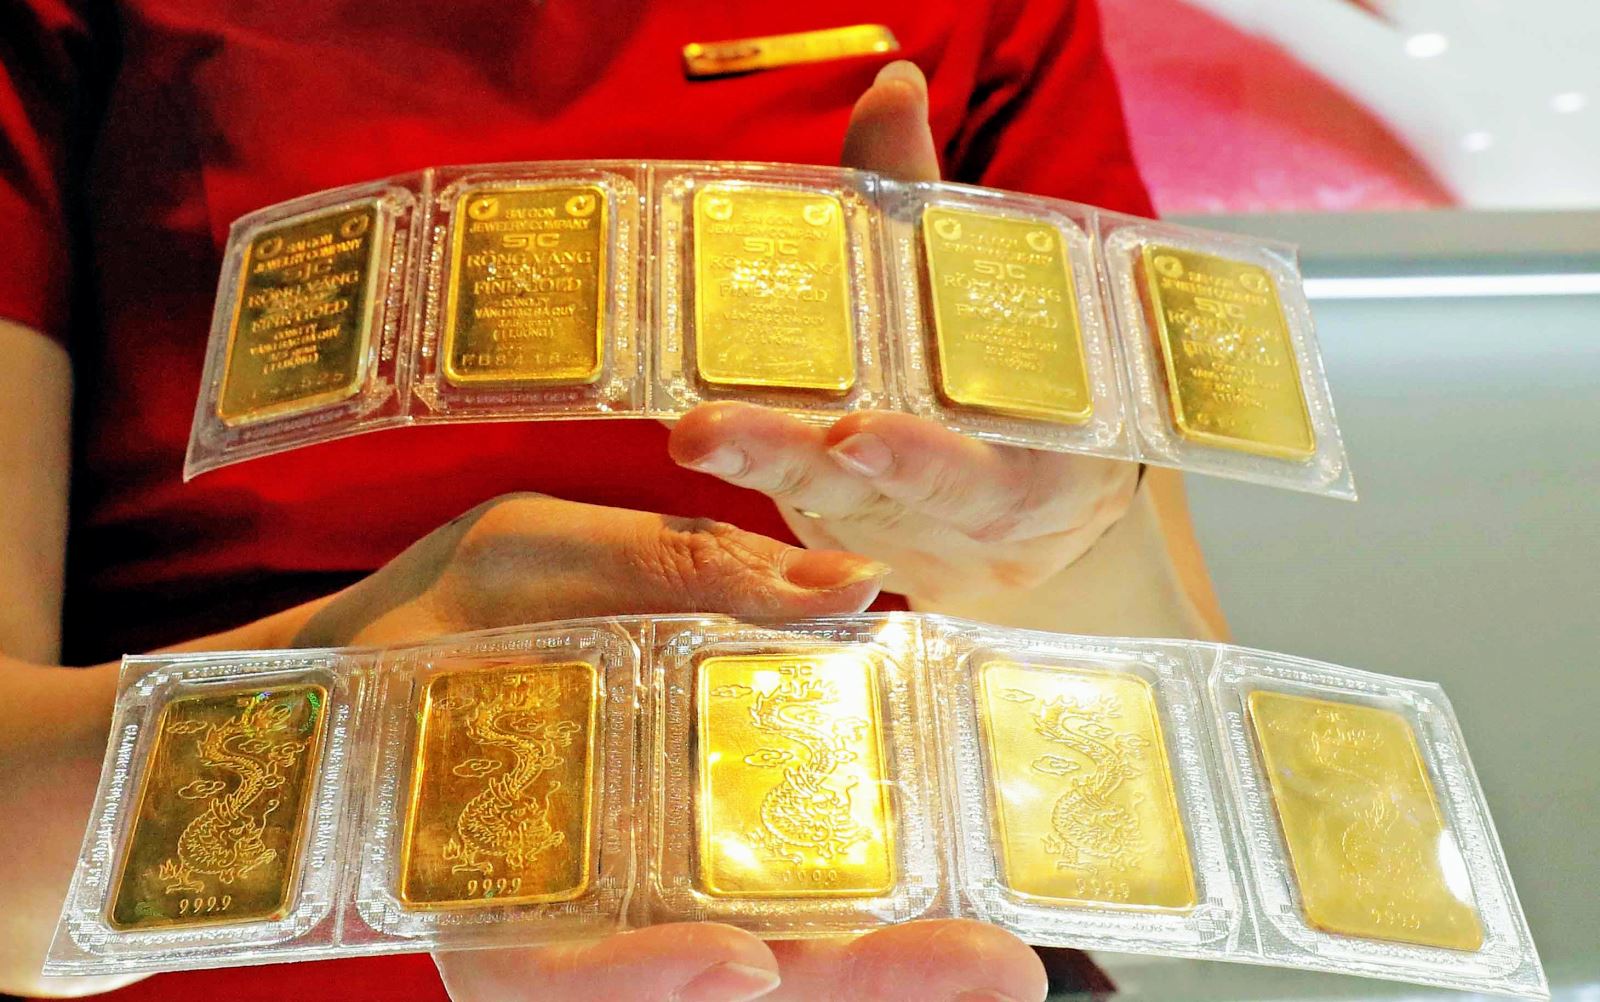 Giá vàng sáng 18/10 giảm 100 nghìn đồng/lượng - Ảnh 1.